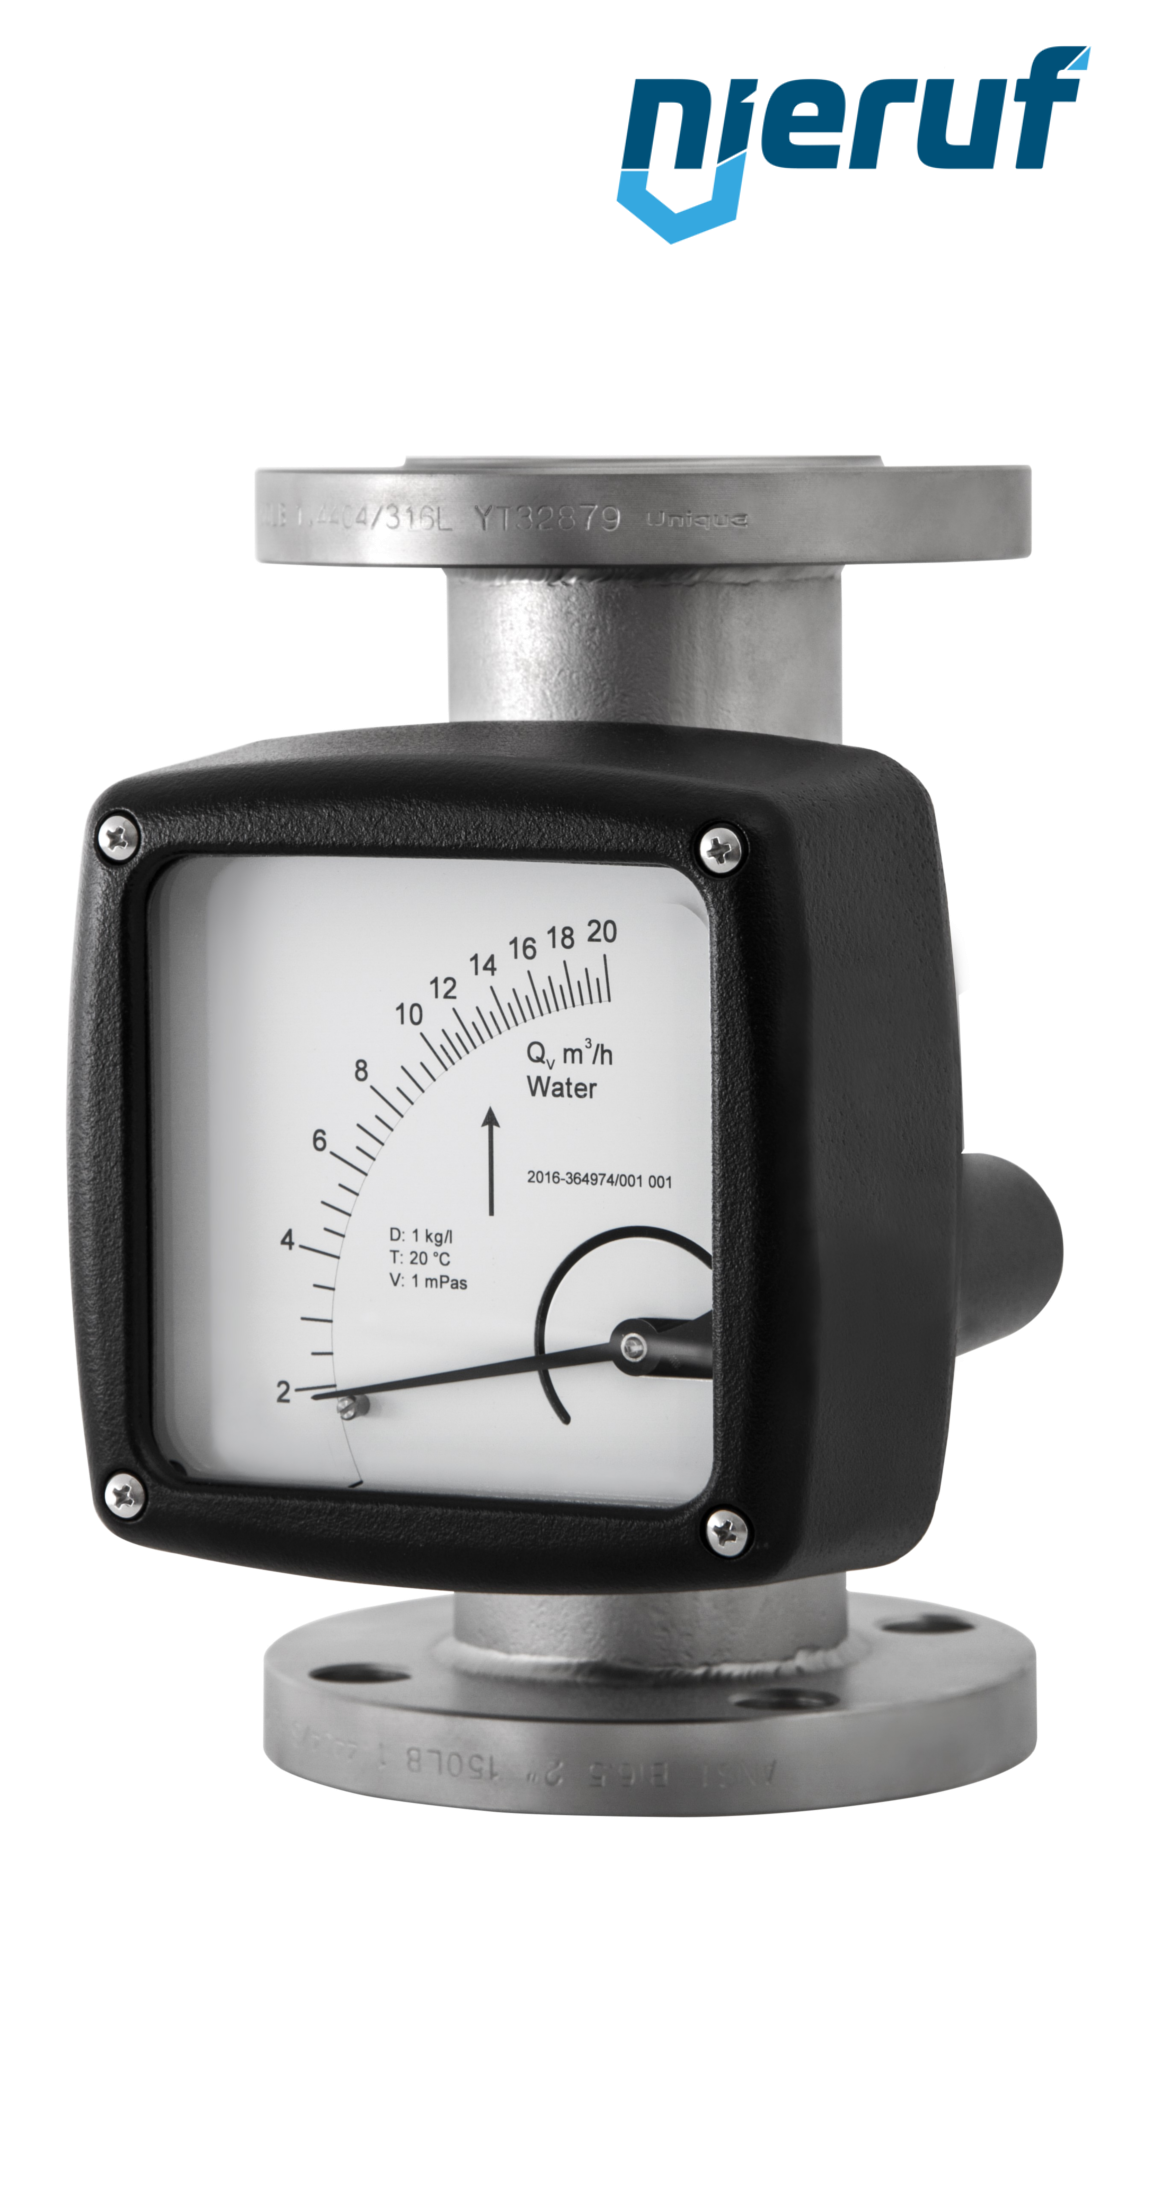 misuratore di portata / flussometro flangiato DN50-attacco 250,0 - 2500,0 l/h tubo DN40 acqua